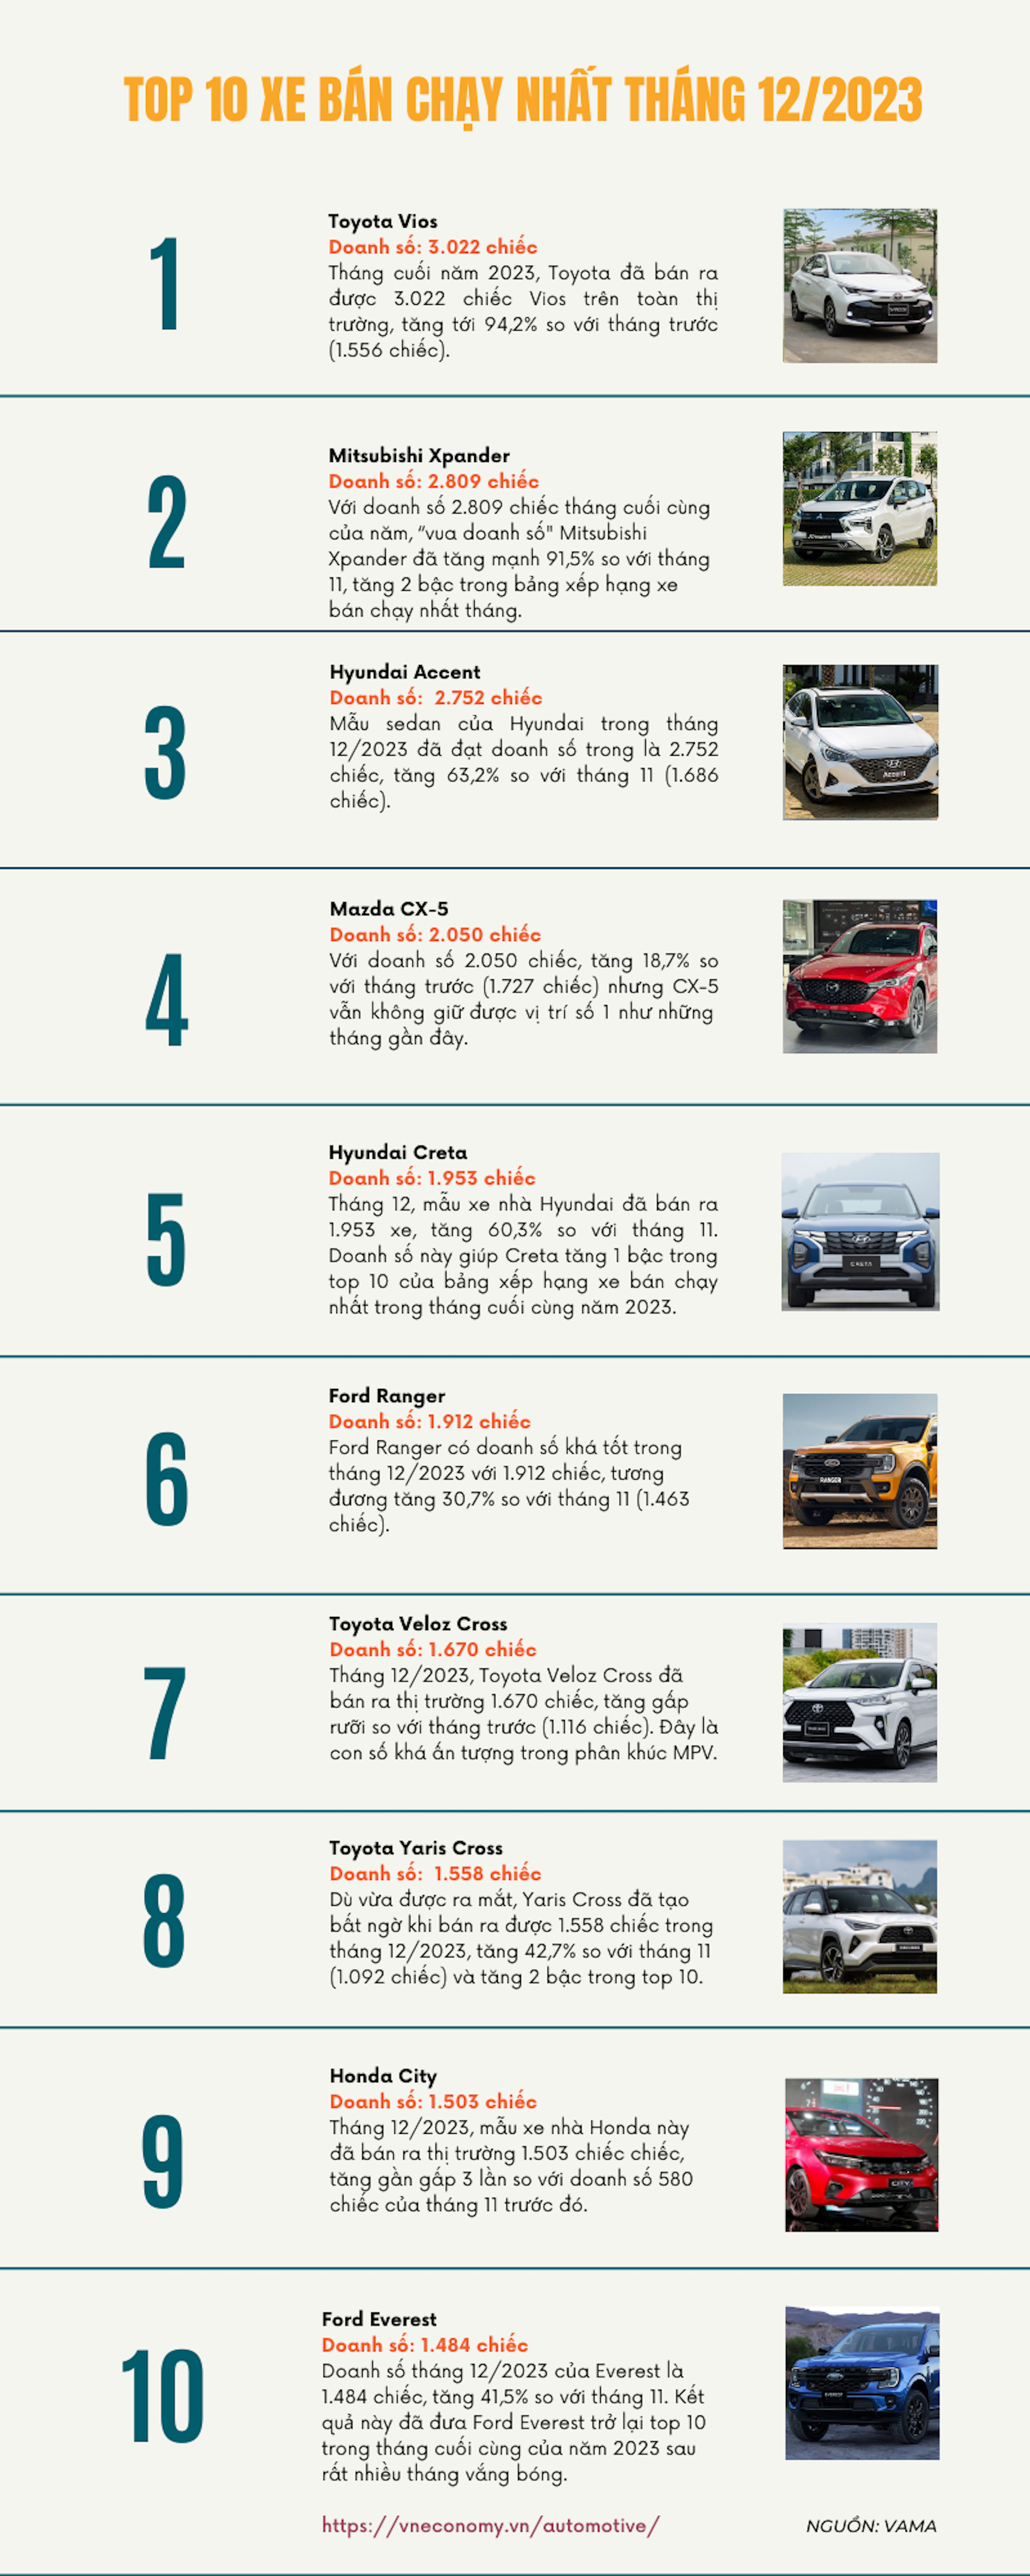 Top 10 xe bán chạy nhất tháng 12/2023: Sự trở lại của Vios  - Ảnh 1